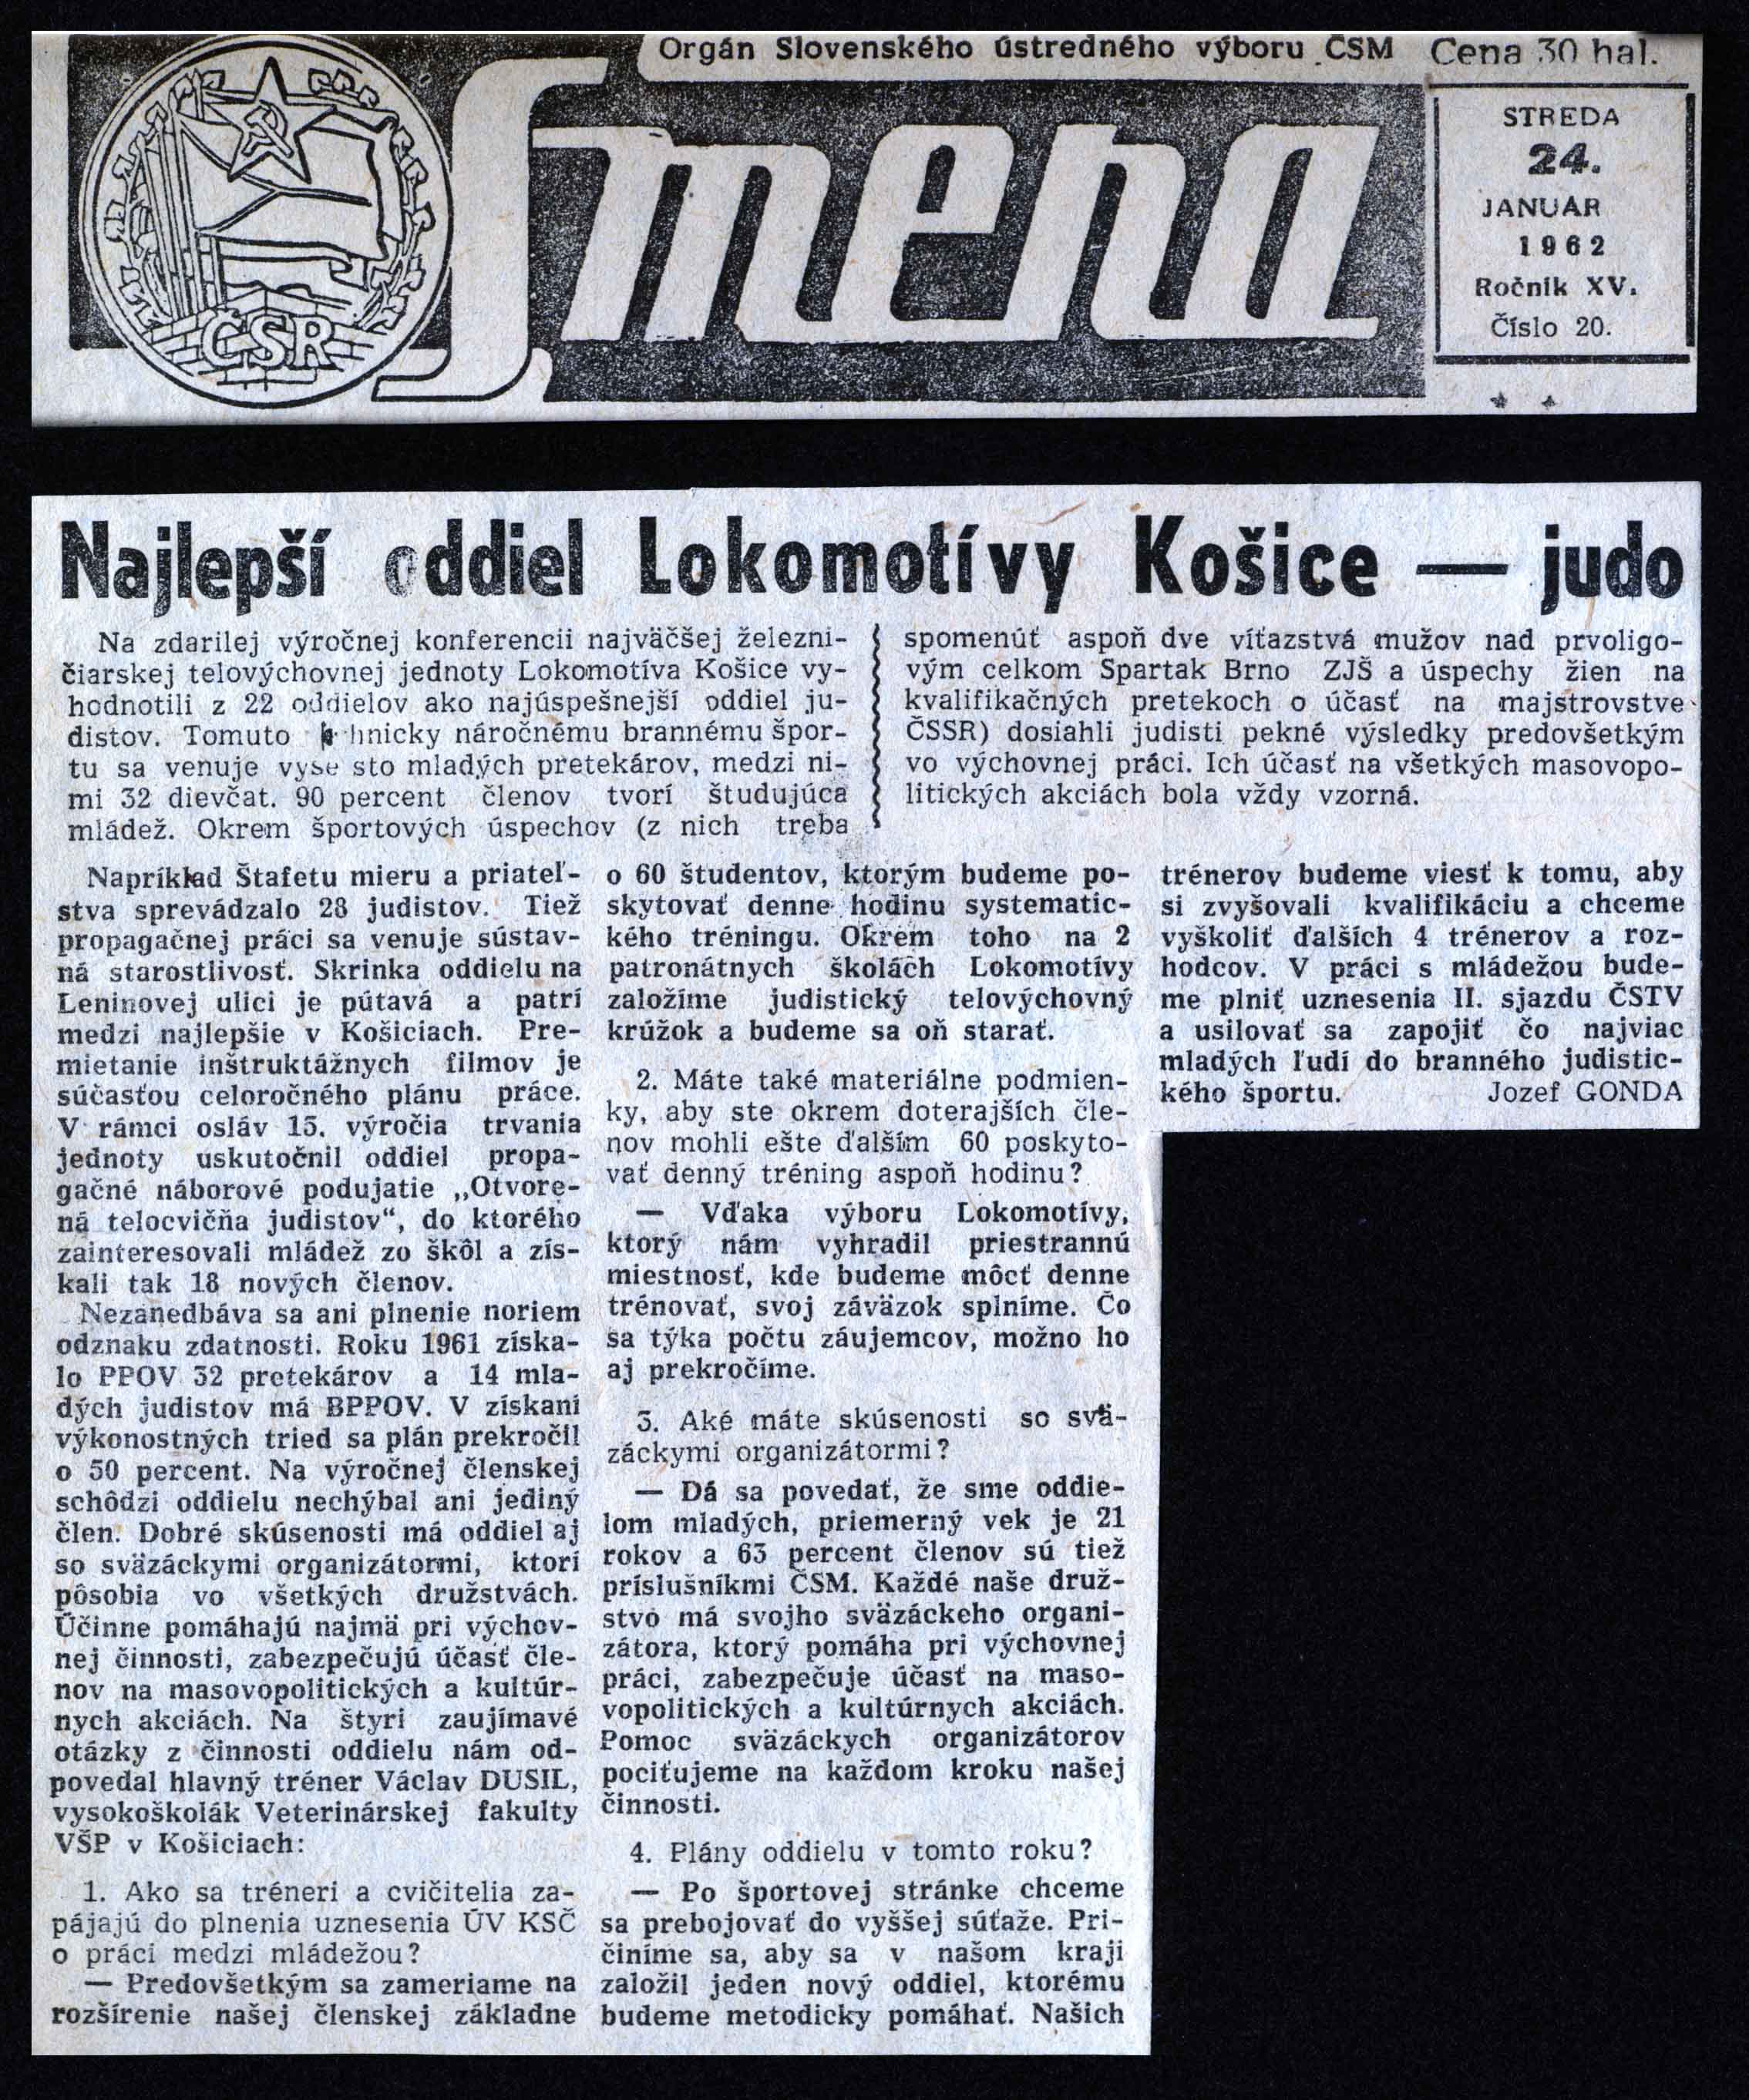 Article - Najlepší oddiel Lokomotívy Košice Judo